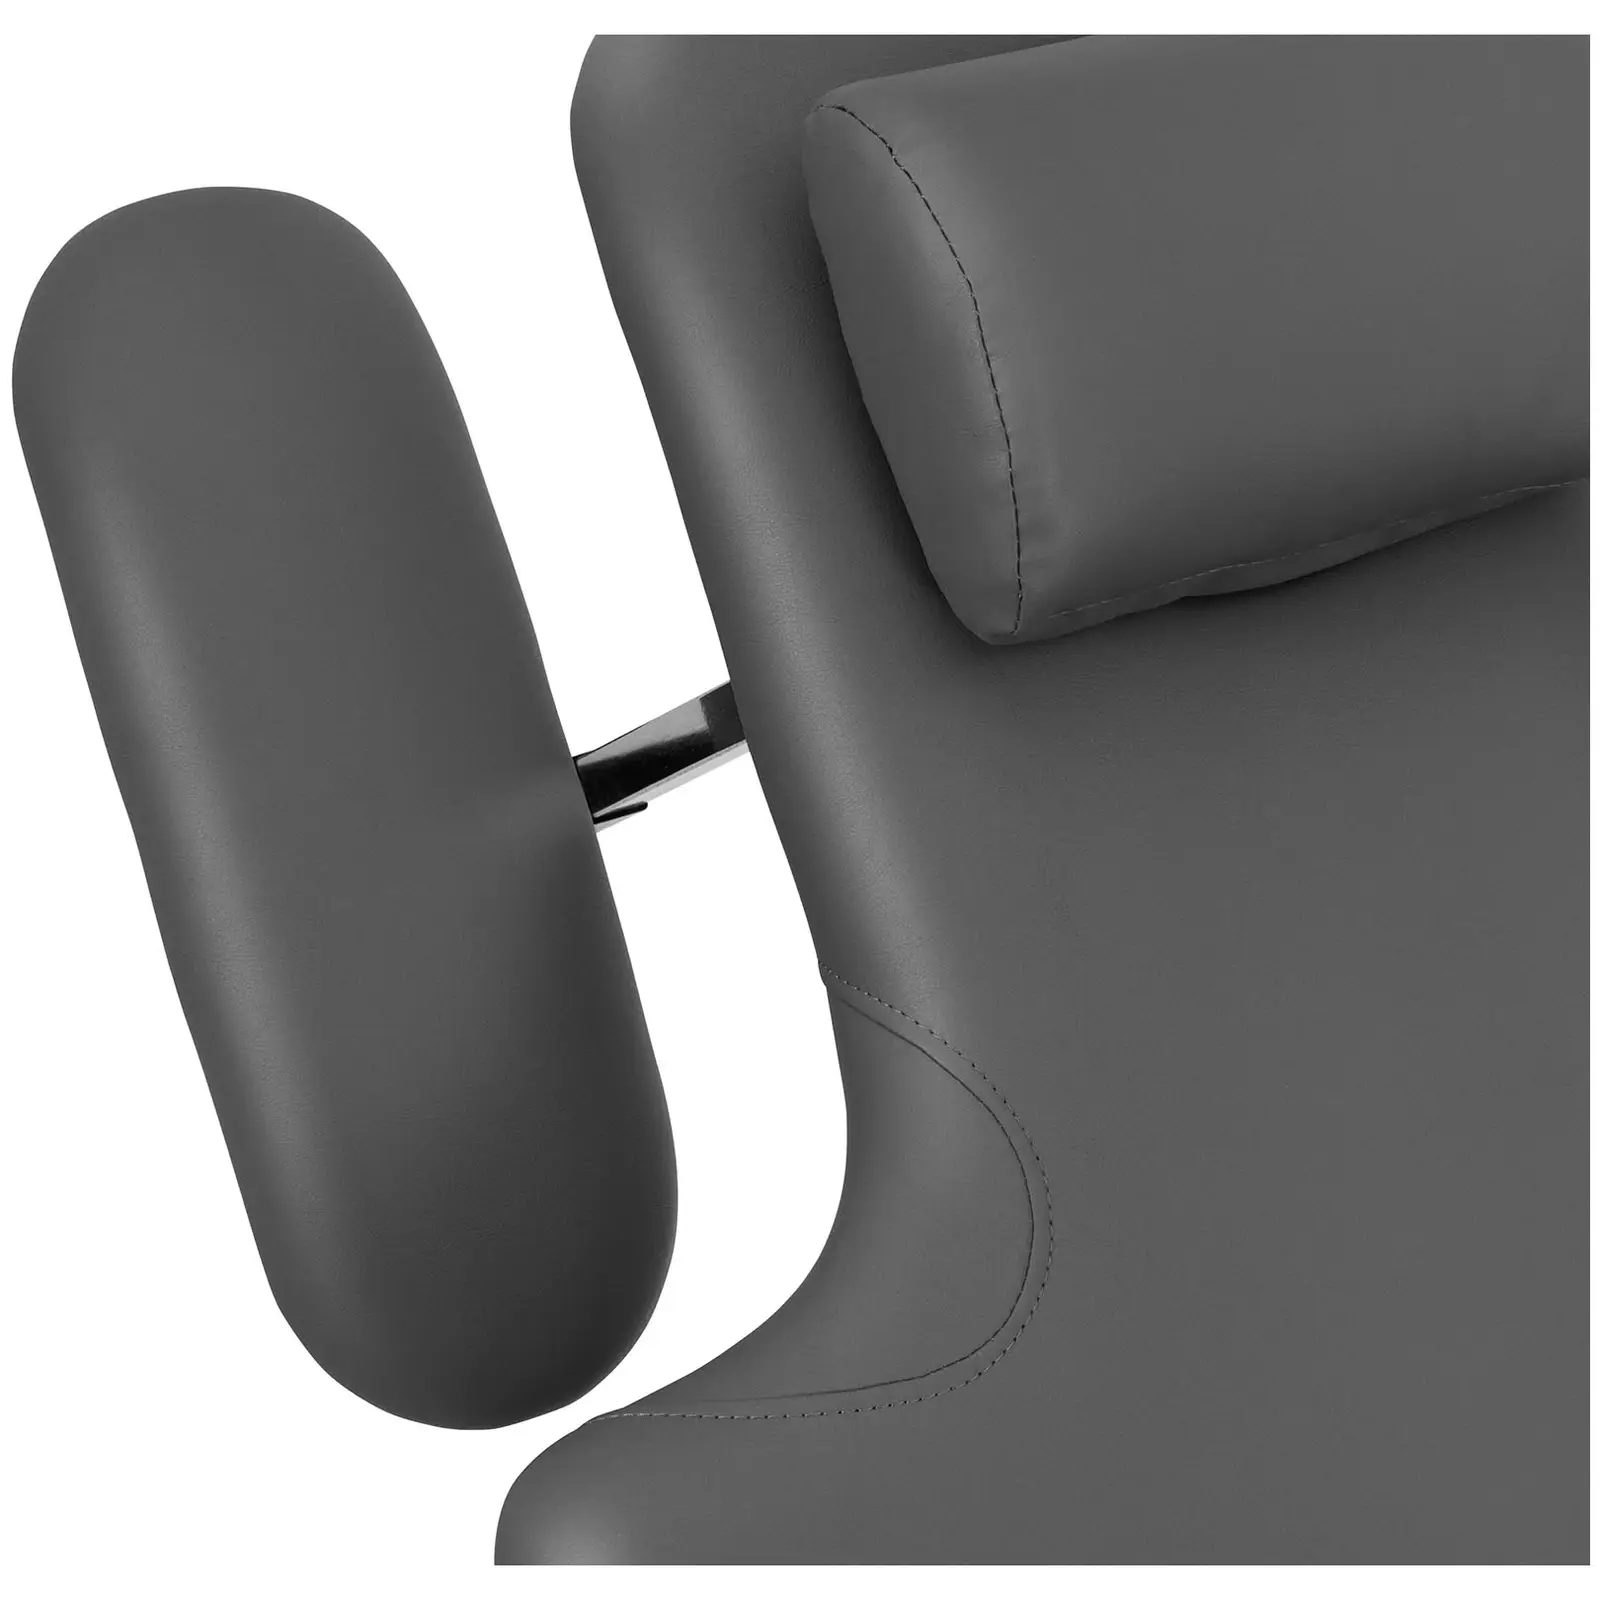 Table de massage - électrique - 250 kg - Noir, Gris